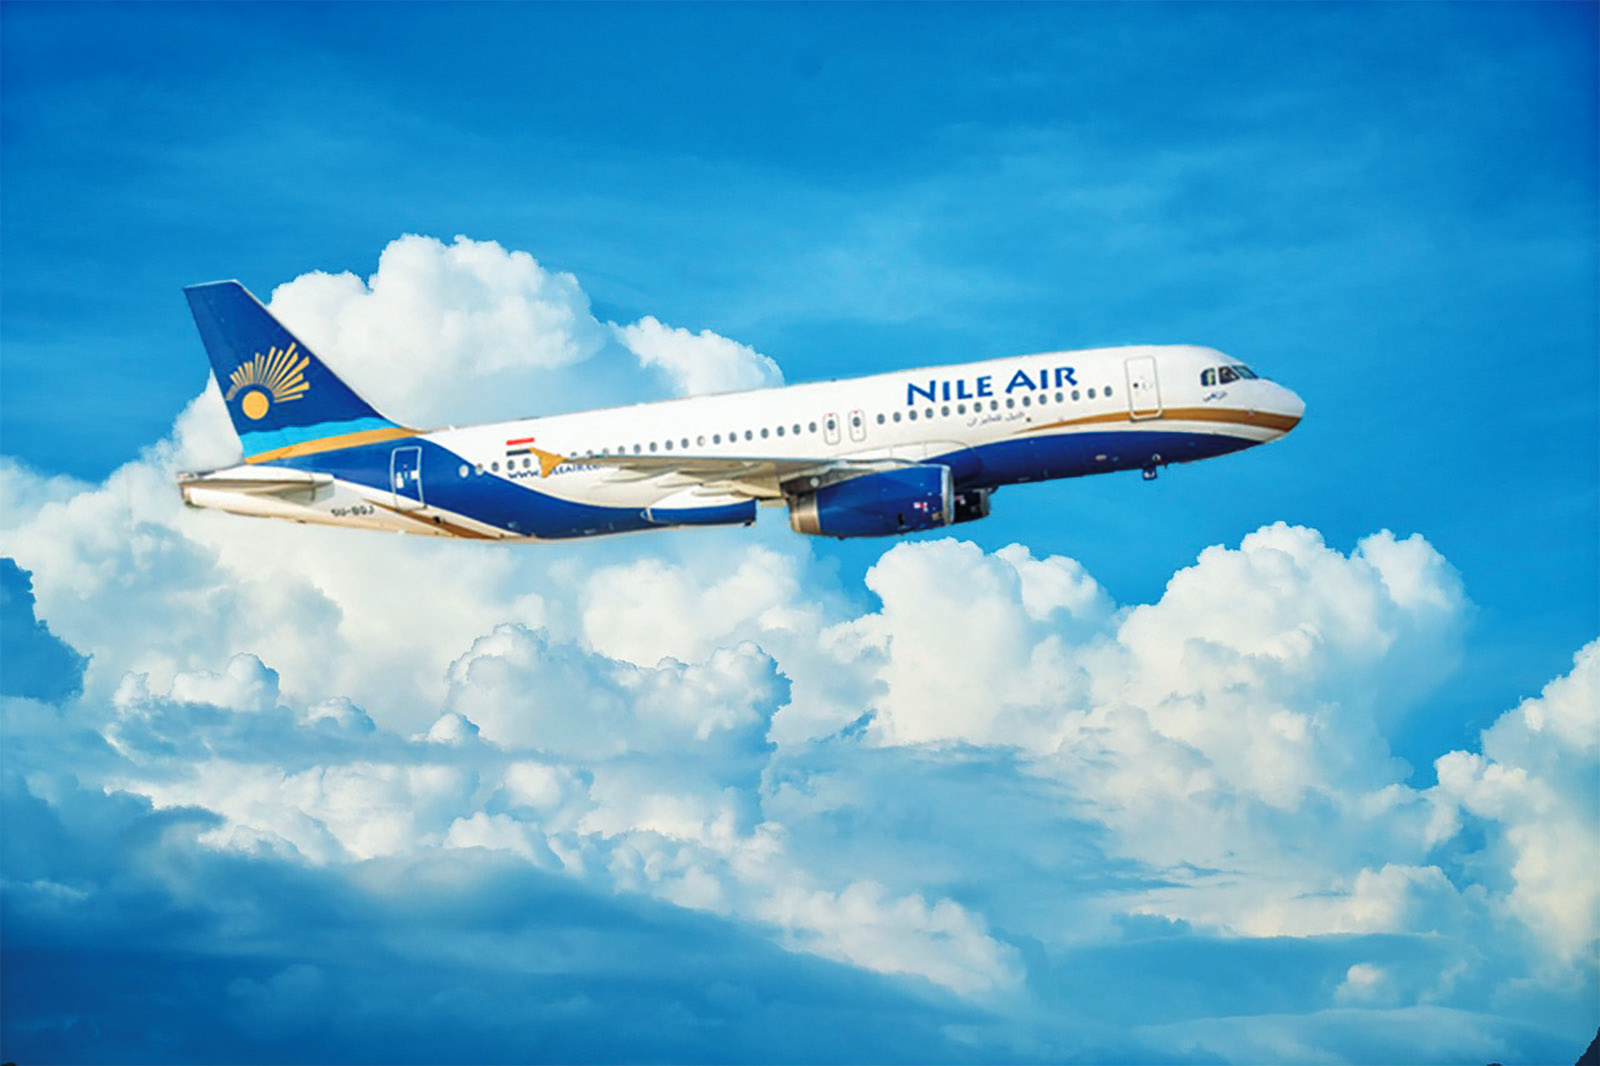 طيران النيل وأهم المعلومات عنه ونصائح للمسافرين بالطائرة من أجل تجربة رائعة